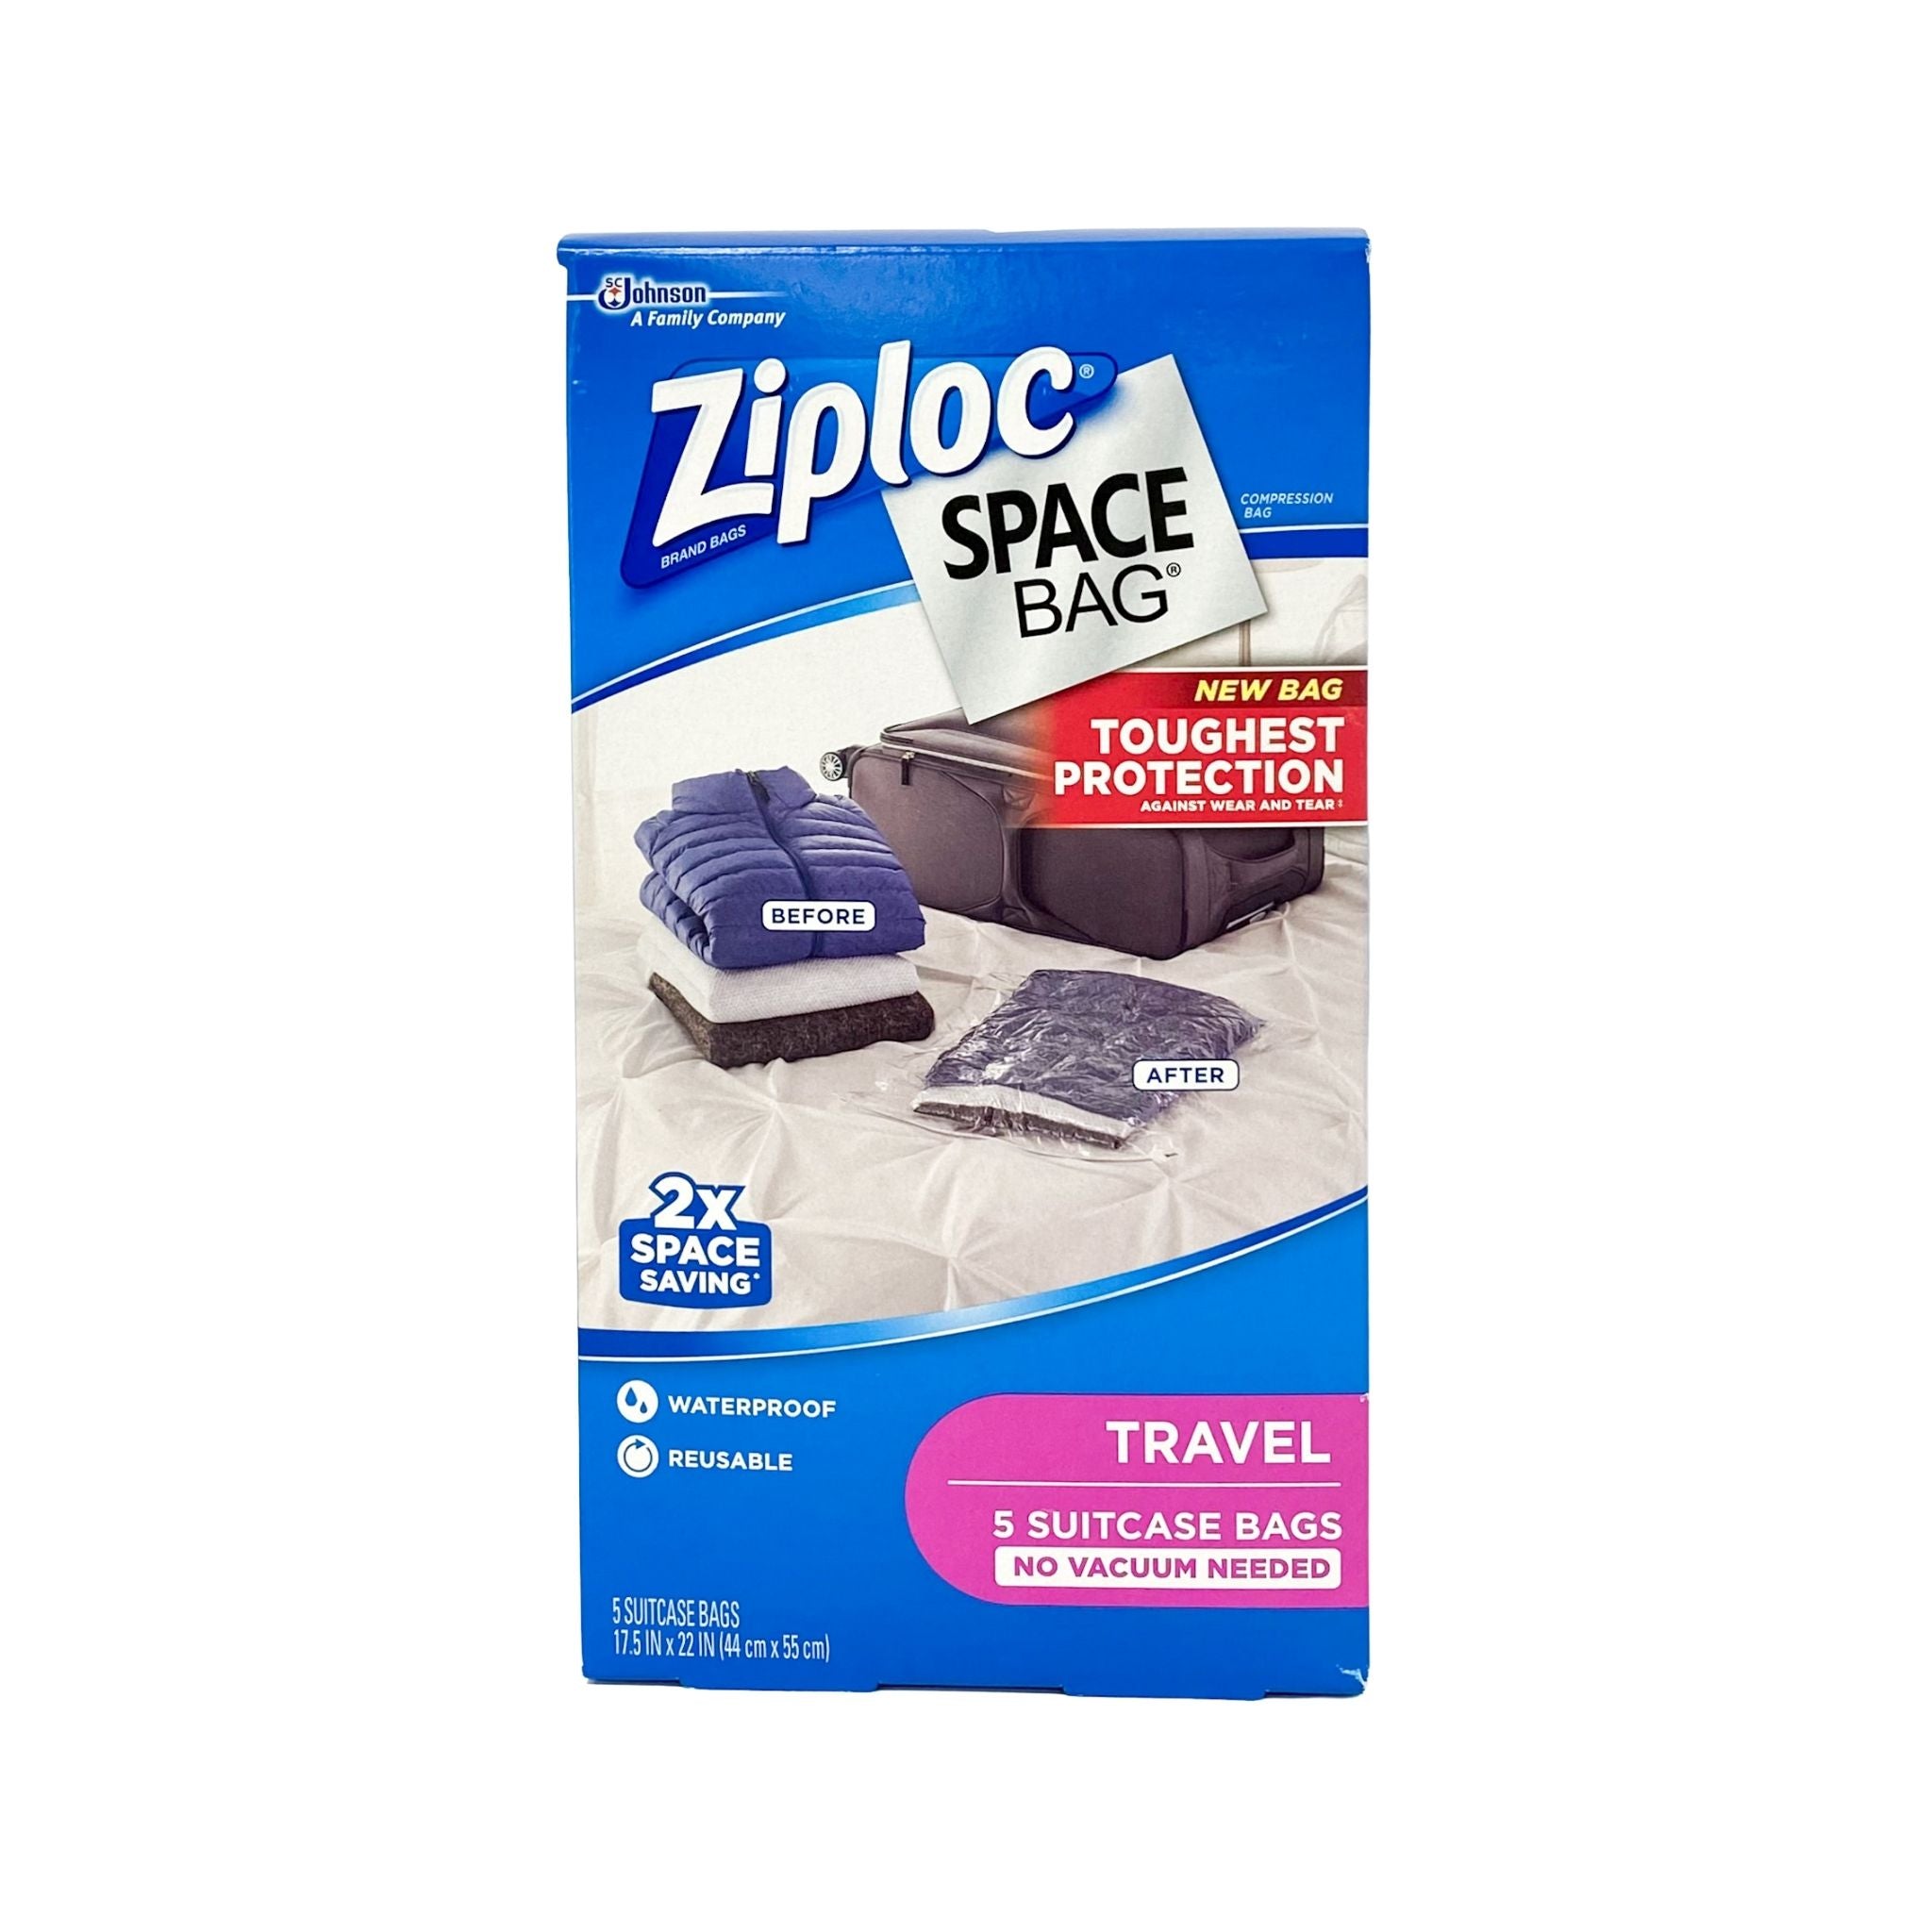 Ziploc Quart 40pc Storage Bags